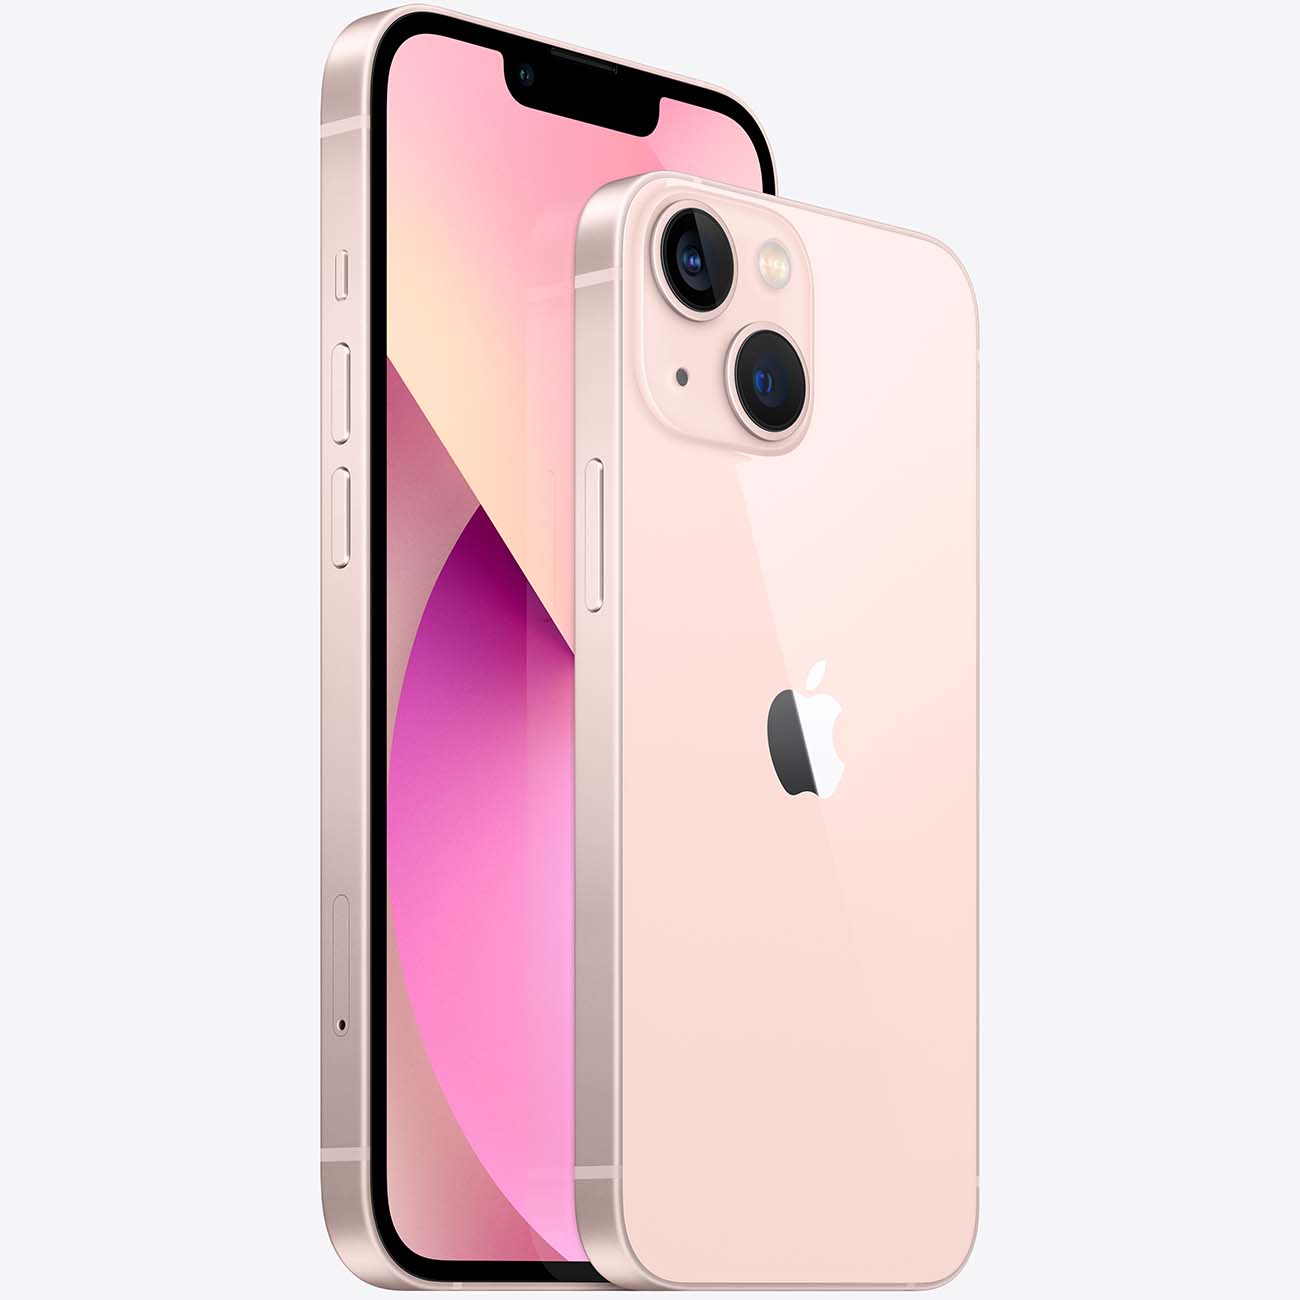 Купить Смартфон Apple iPhone 13 mini 128GB Pink 69 990 руб. Apple iPhone 13  mini в официальном магазине Apple, Samsung, Xiaomi. iPixel.ru смартфон  apple iphone 13 mini 128gb pink в городе. доставка,